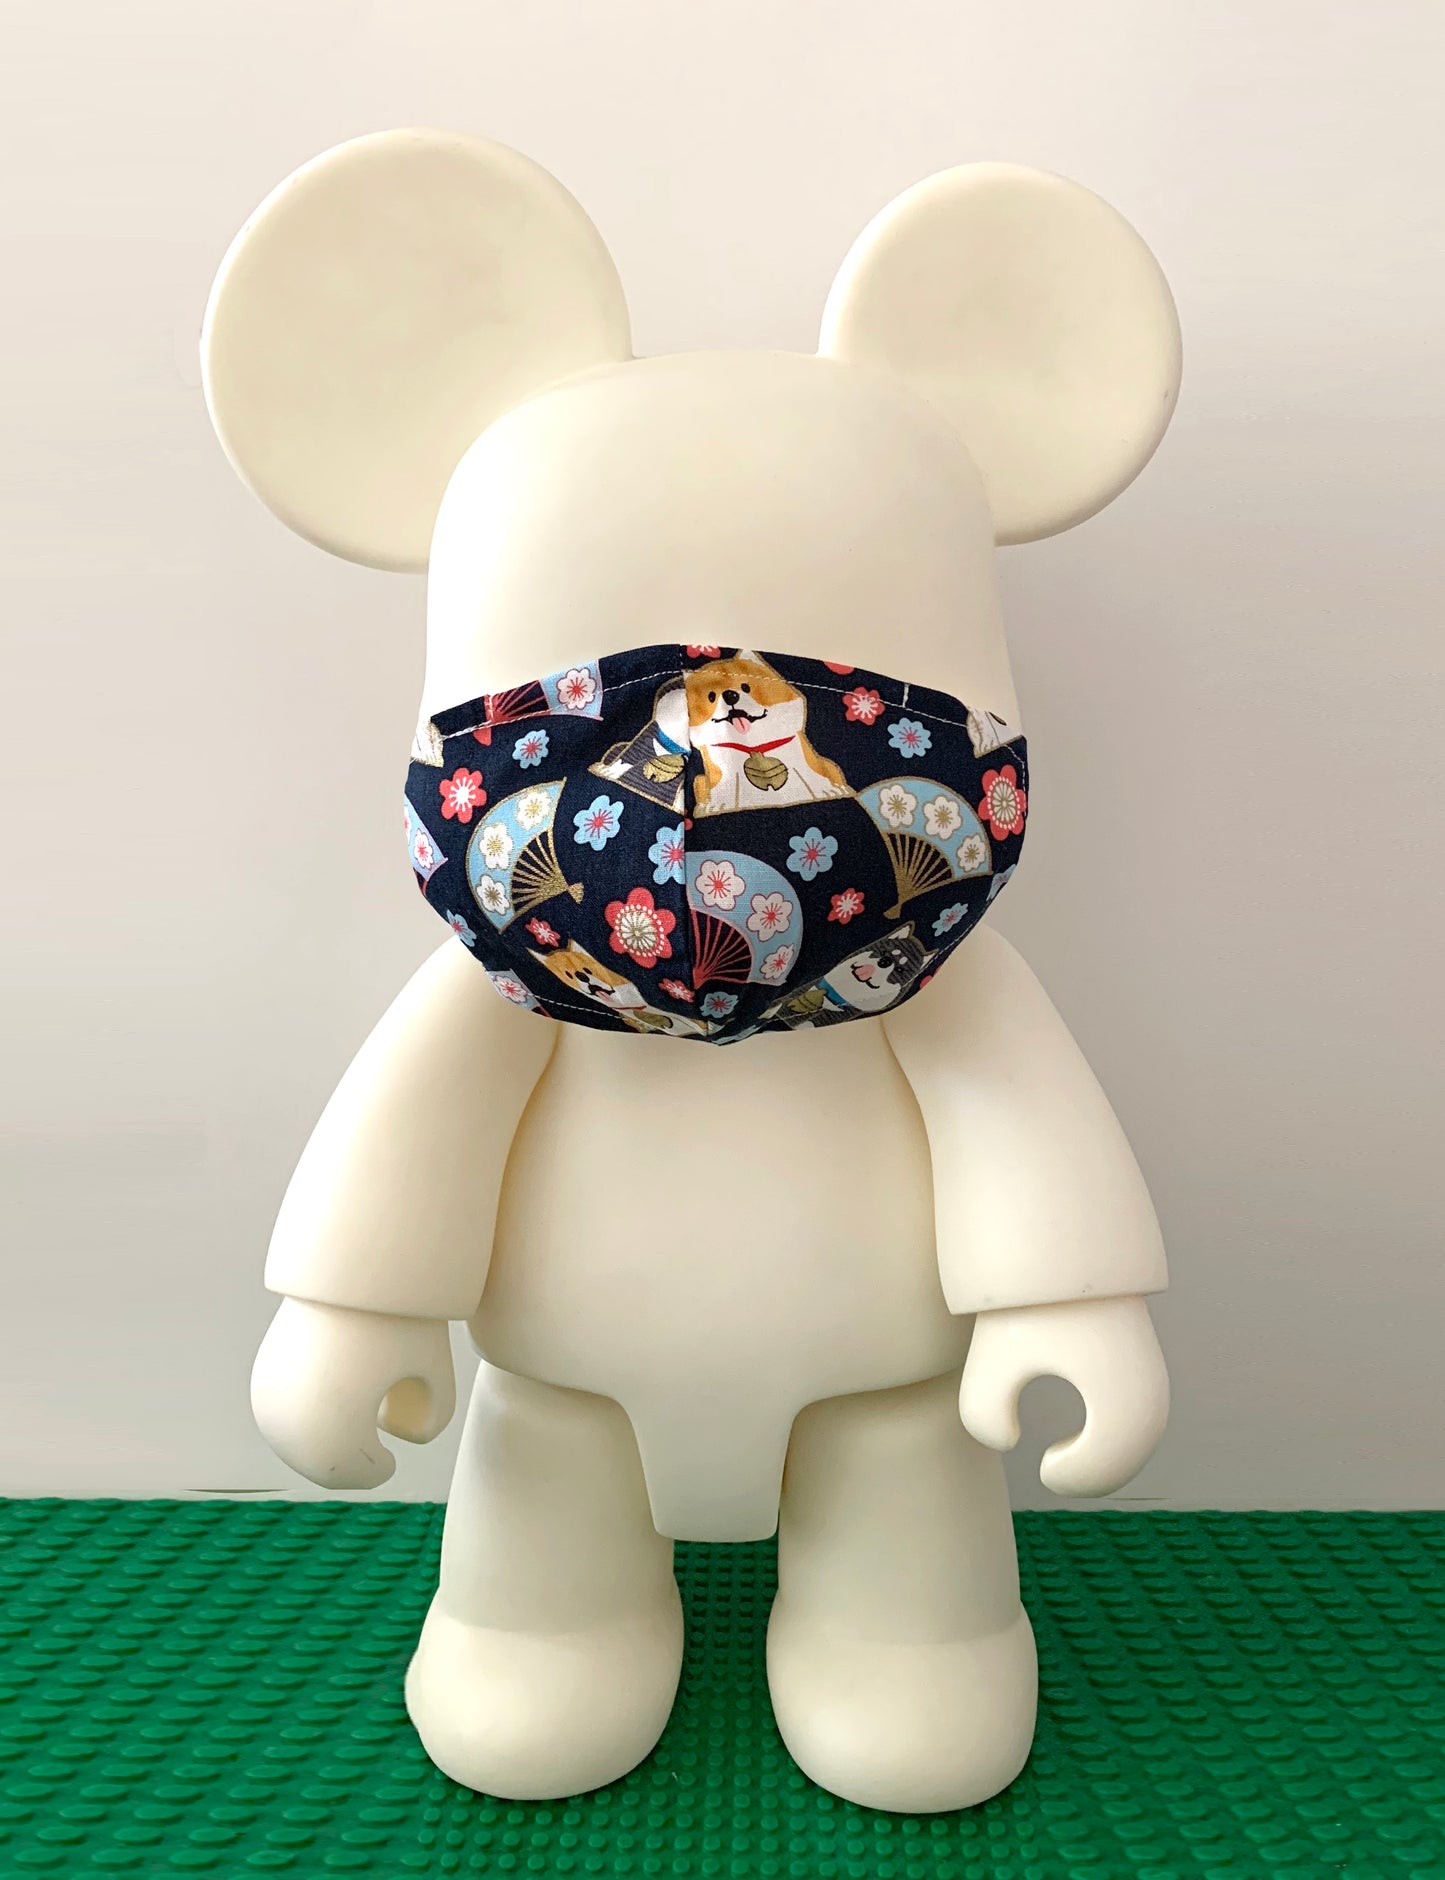 Japanese Fabric - Corgi Dog Face mask